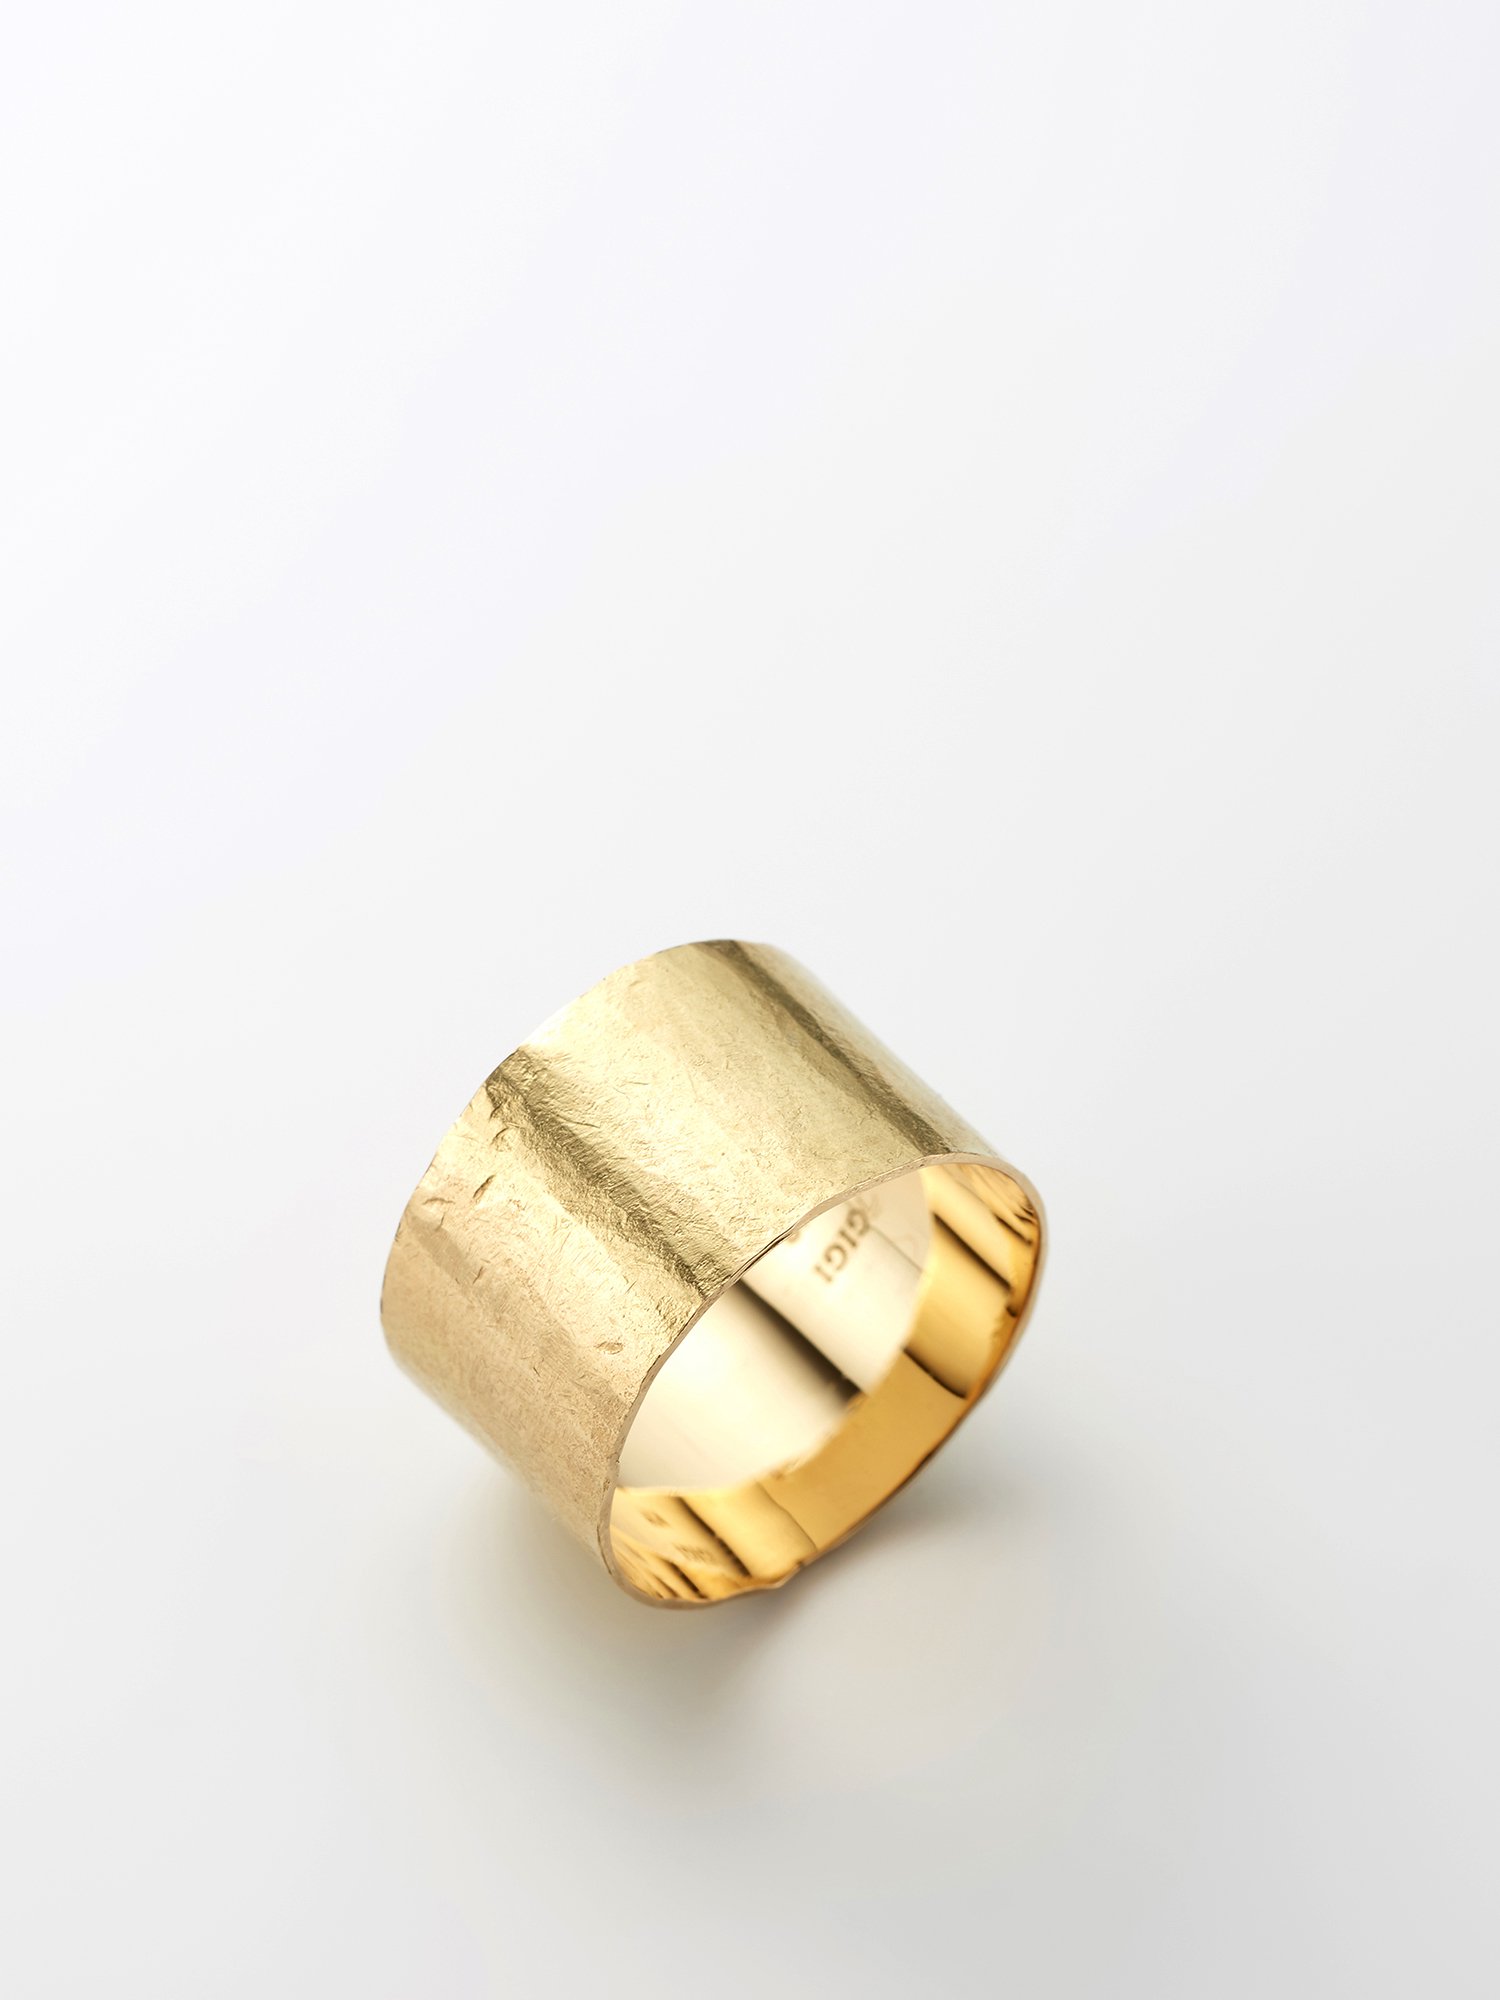 HELIOS / Metal ring / 11.5mm